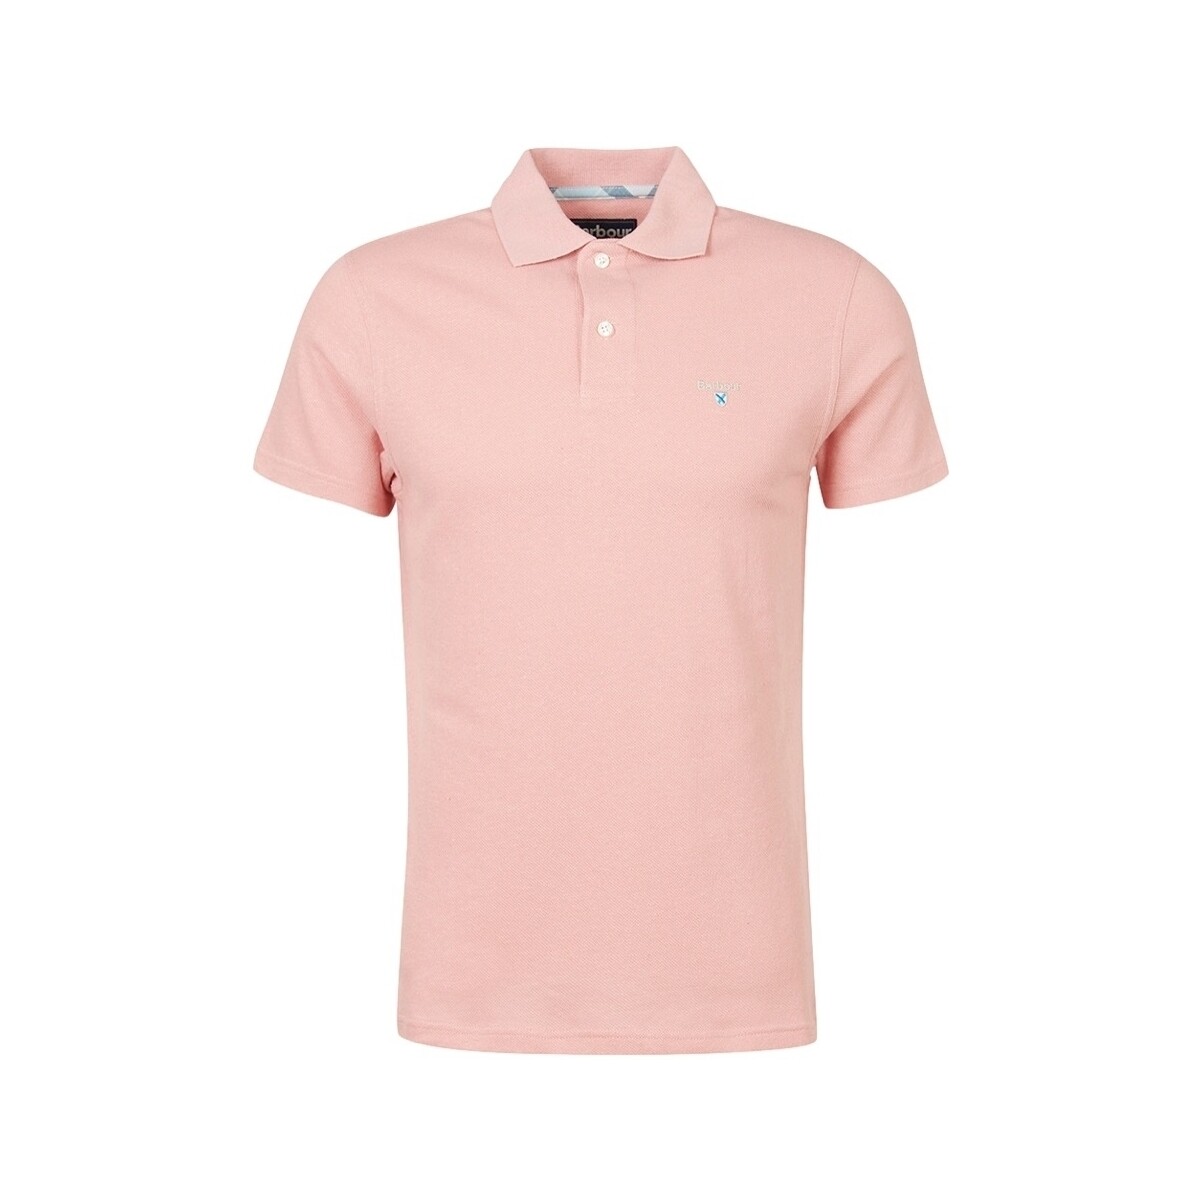 Υφασμάτινα Άνδρας T-shirts & Μπλούζες Barbour Ryde Polo Shirt - Pink Salt Ροζ